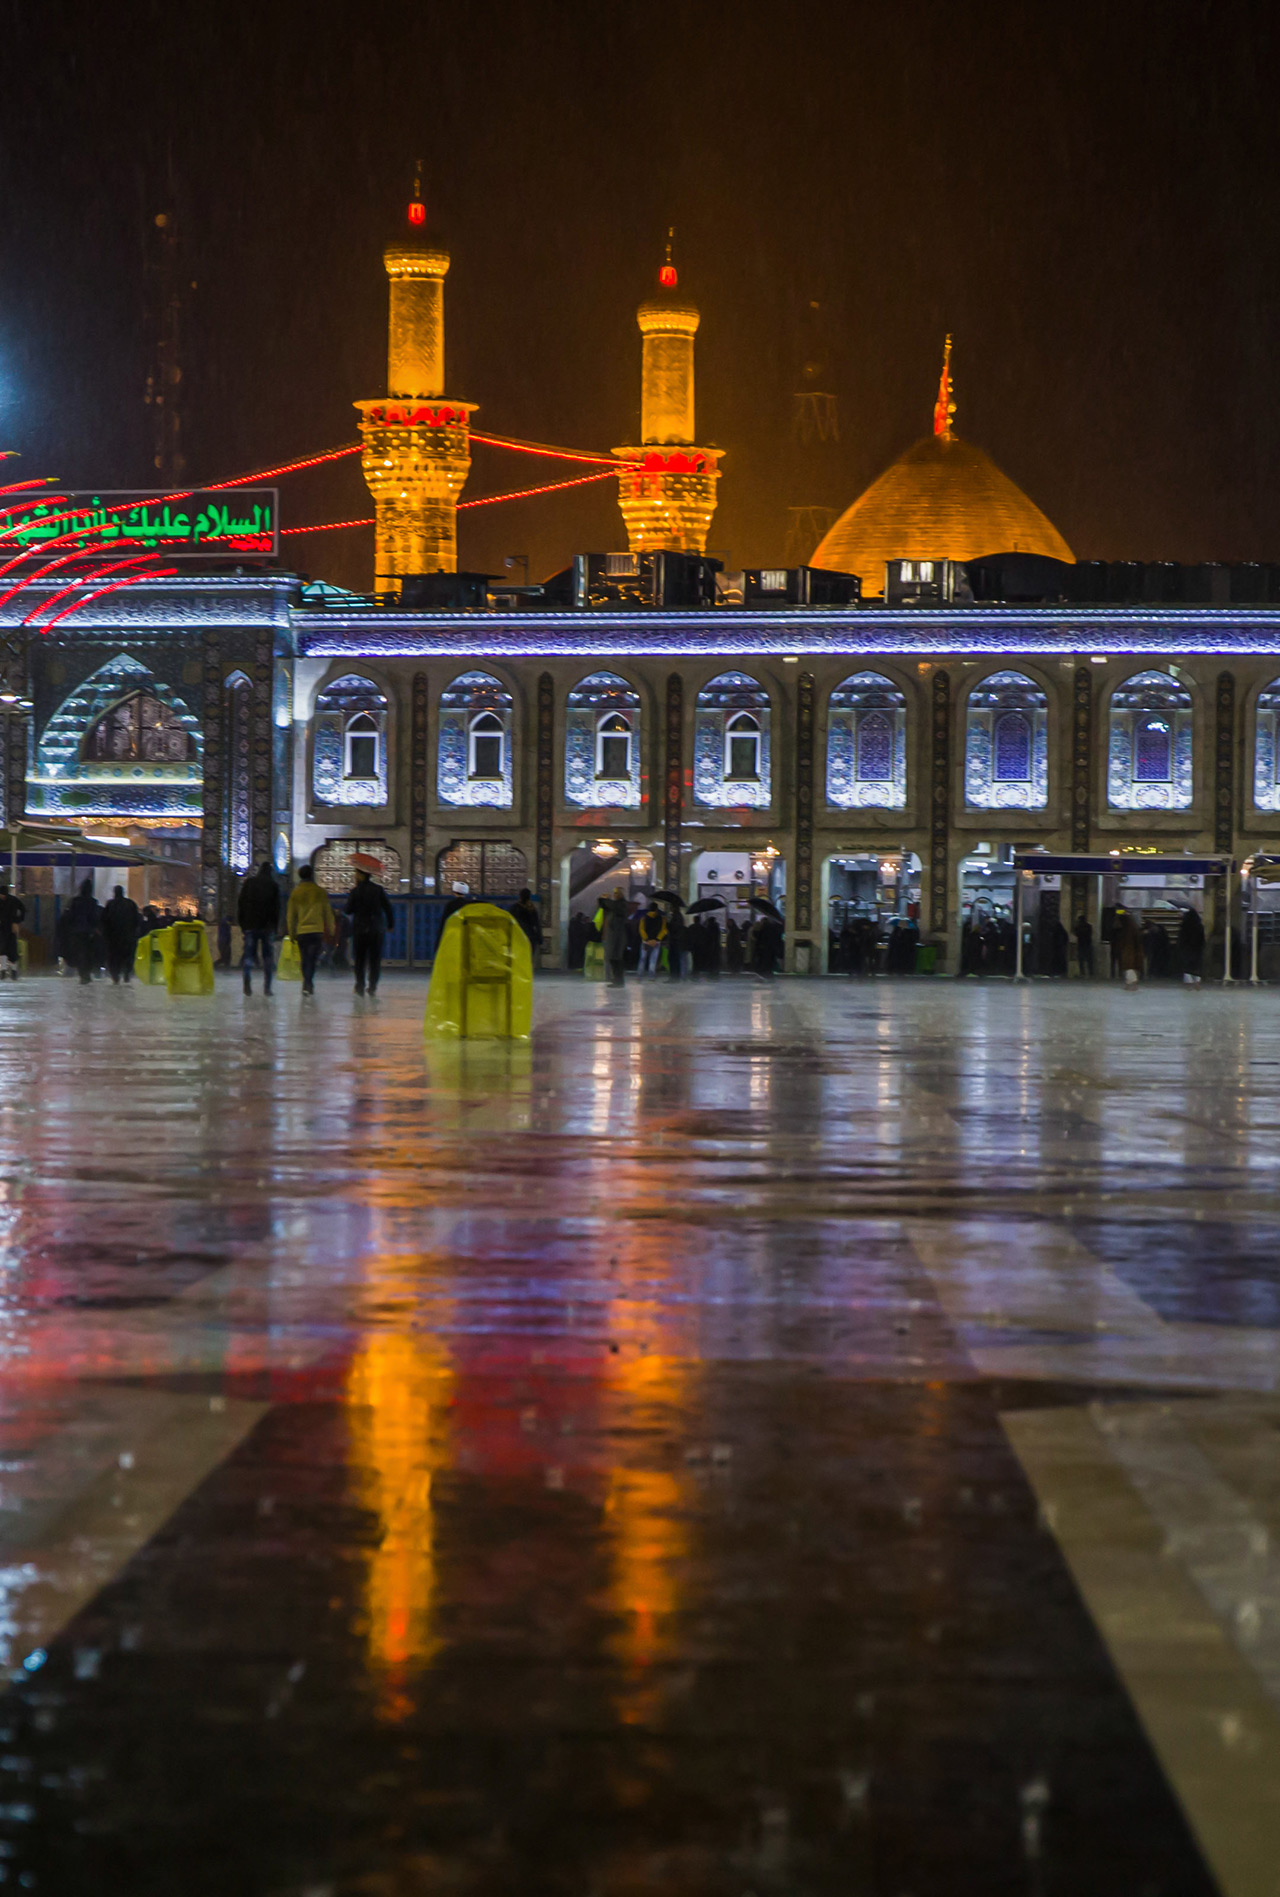 تصاویر زیبا از حرم امام حسین (ع) در روزهای بارانی/ من ... قدم‌زنان ... در حرم بارانیت ...